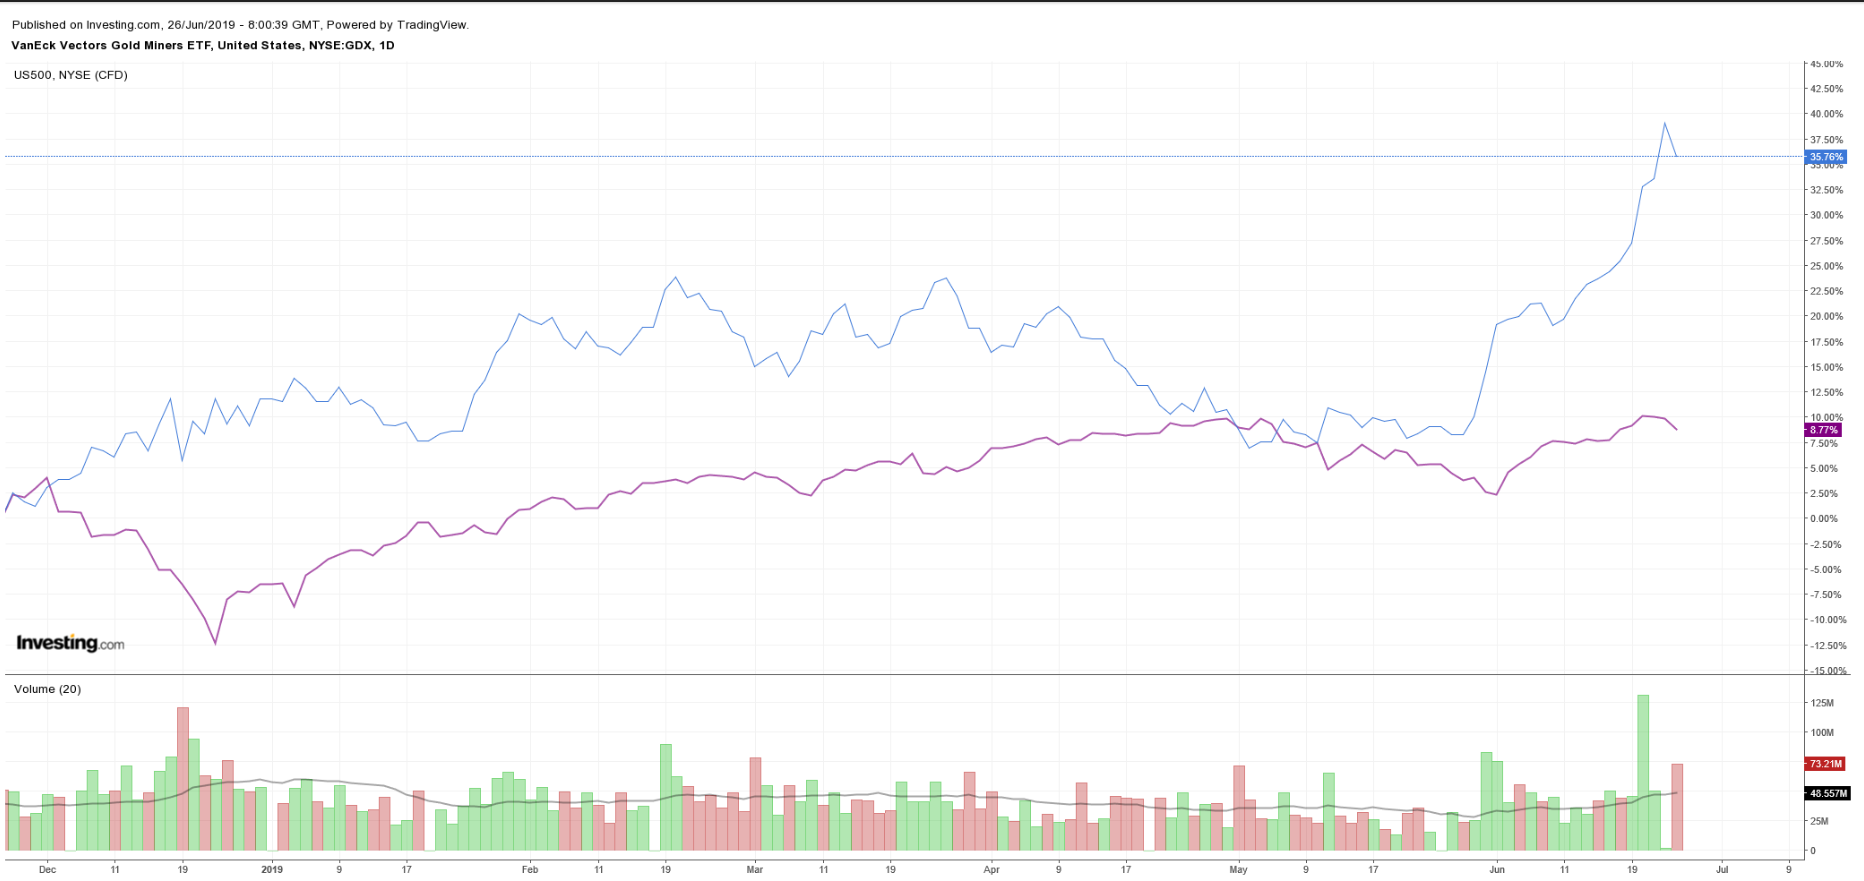 GDX vs S&P 500 Daily Chart